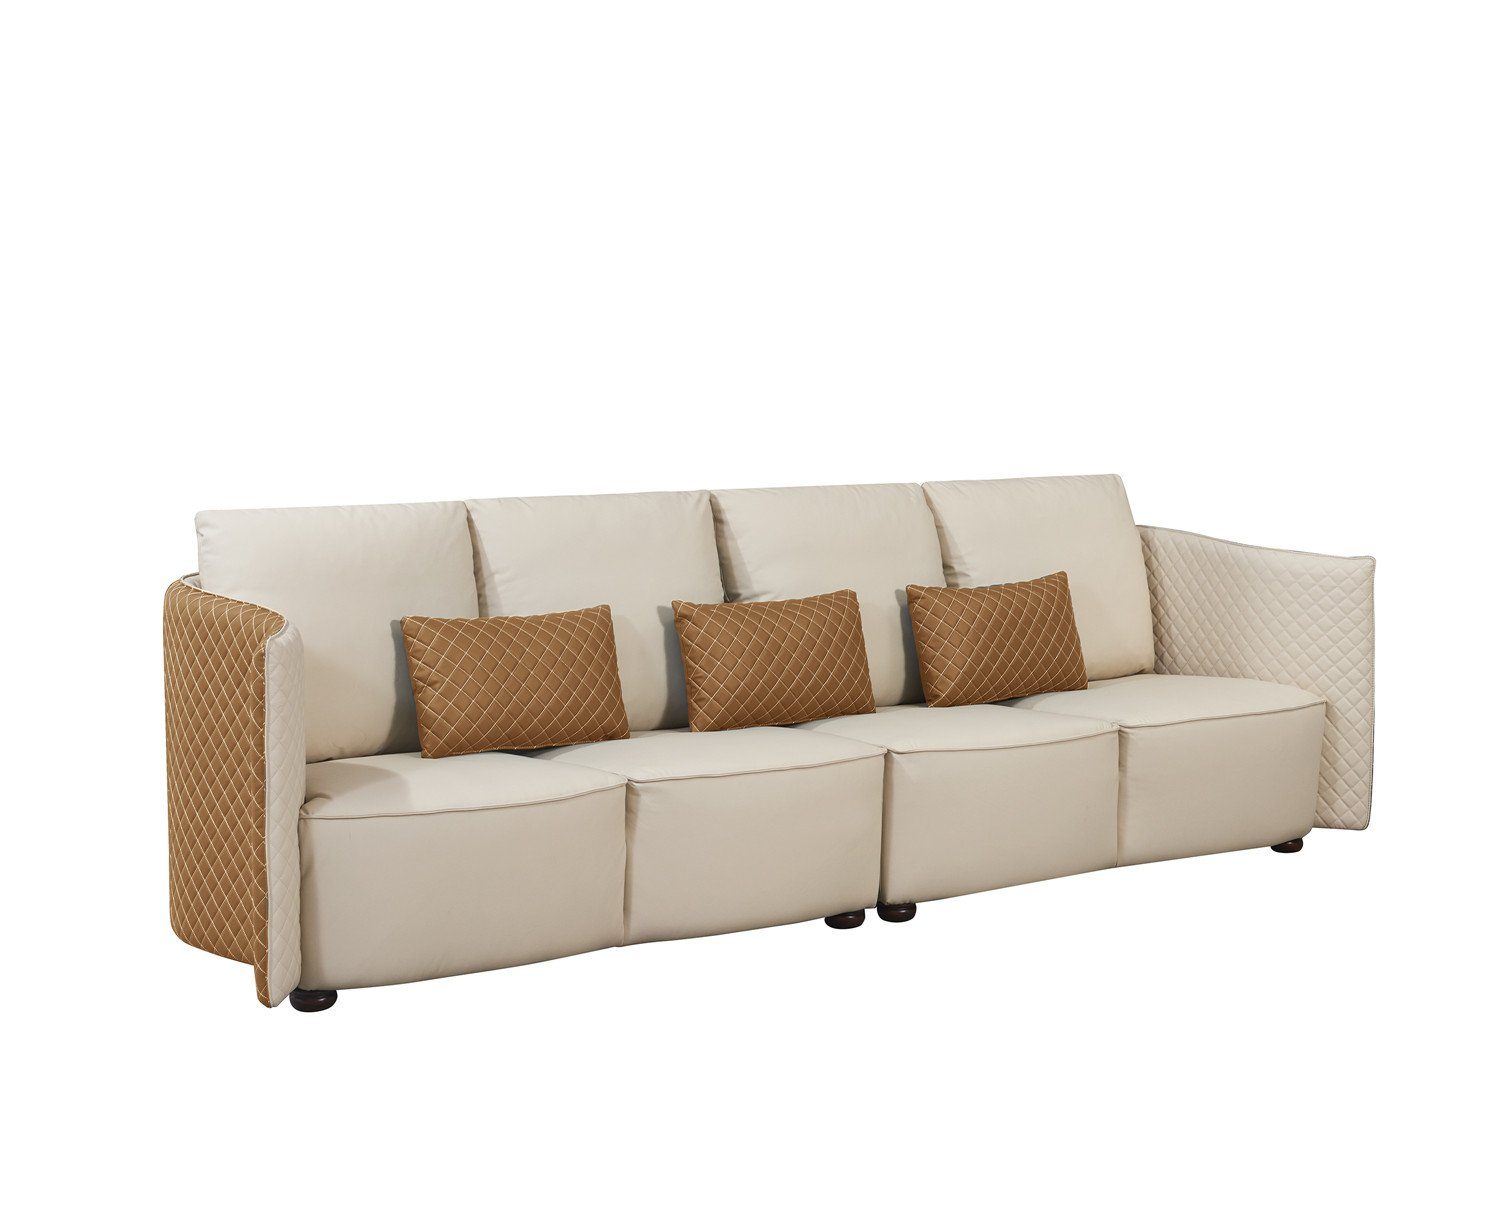 Große Wohnzimmermöbel, JVmoebel Luxus Europe Made in moderne Sofa Couch